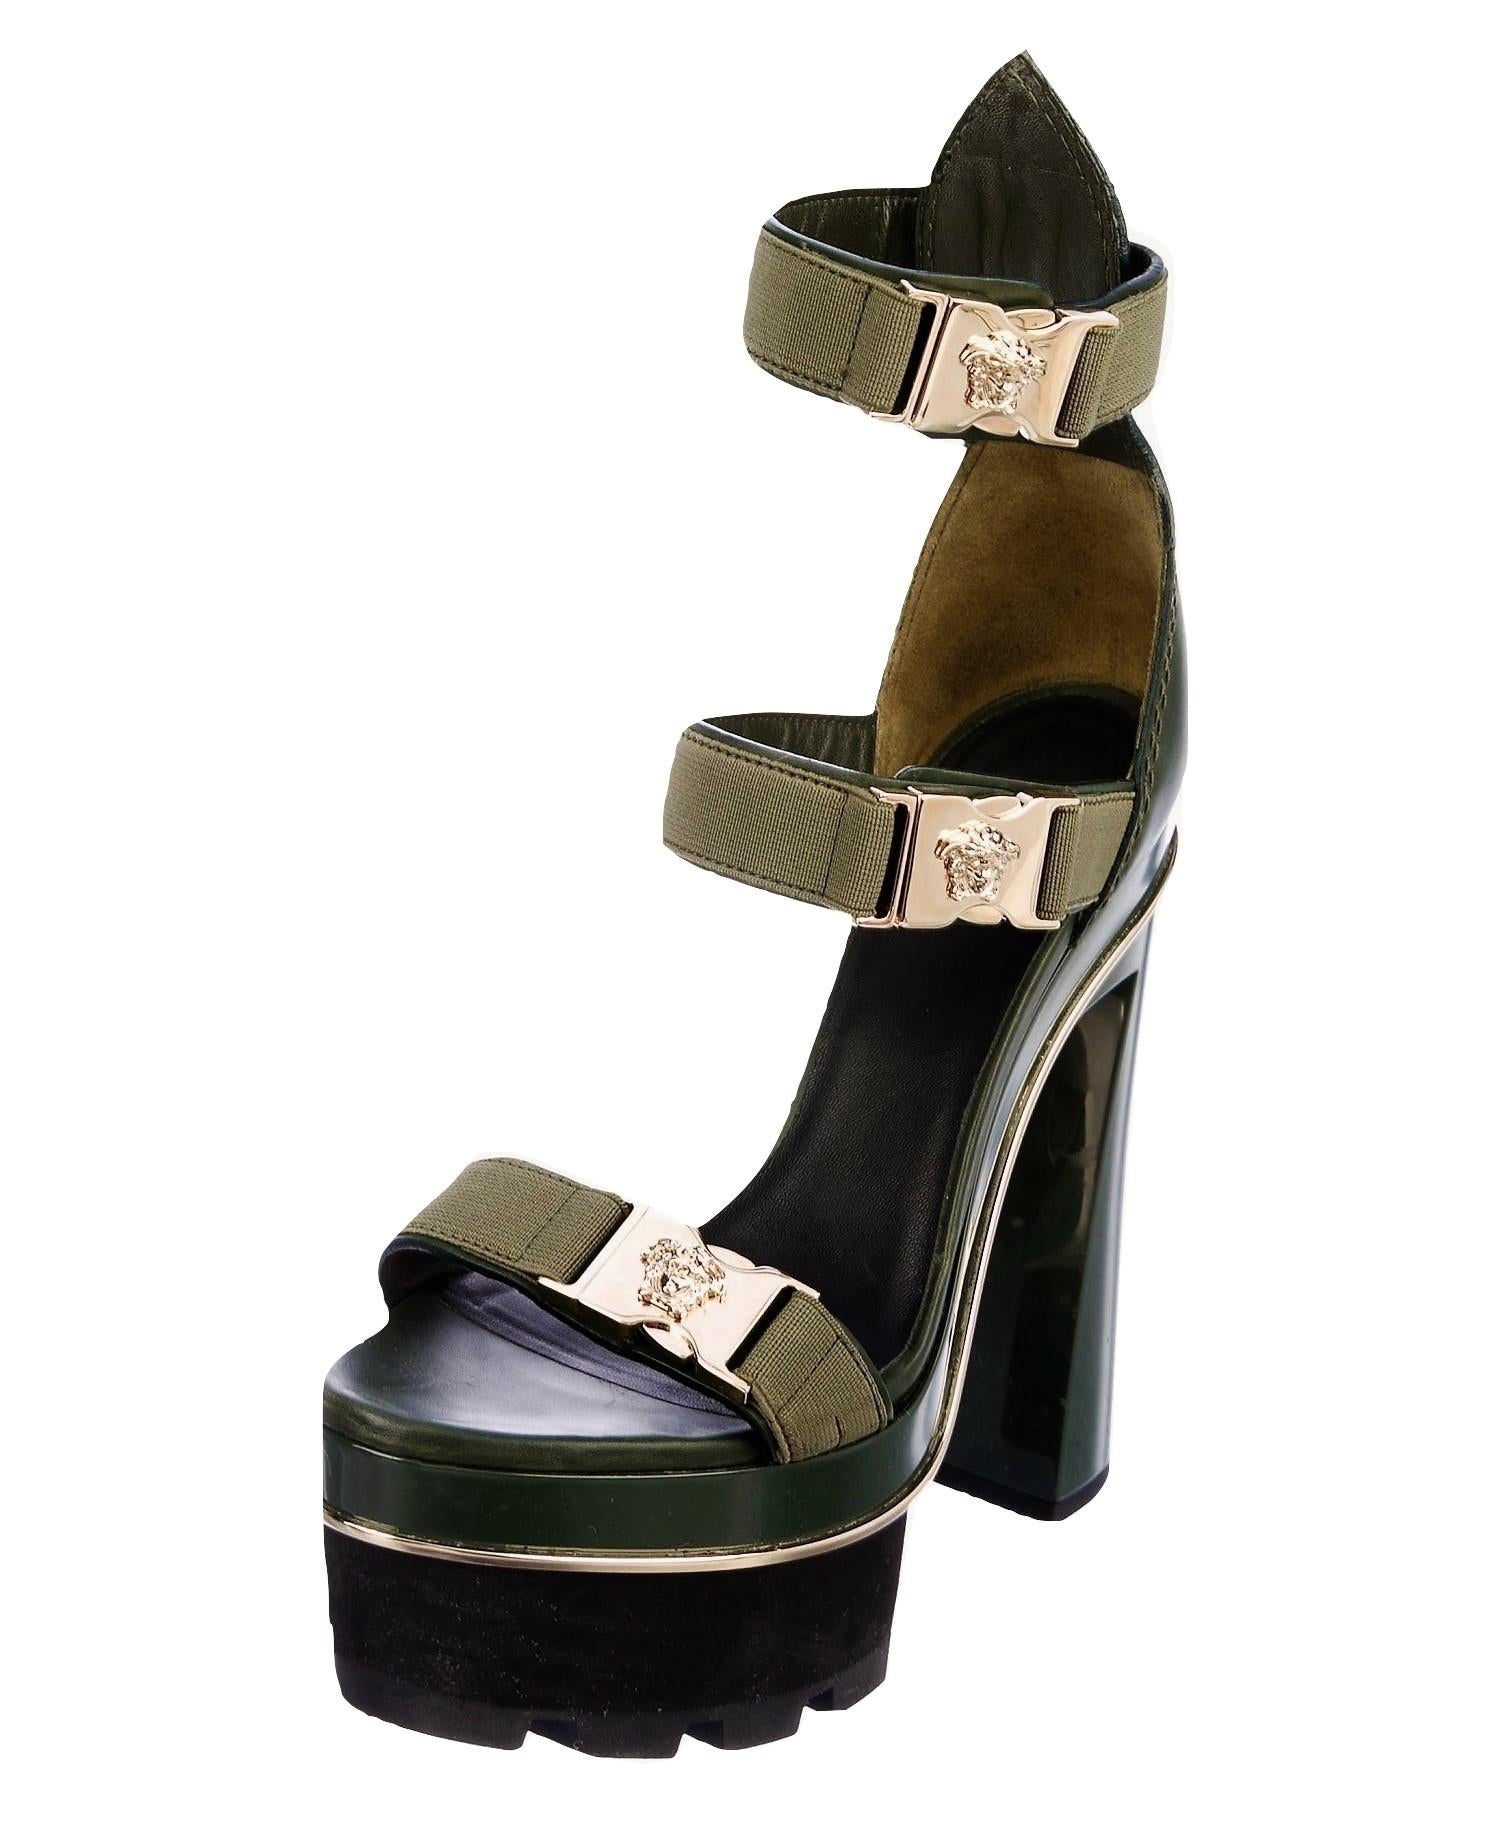 versace heels platform